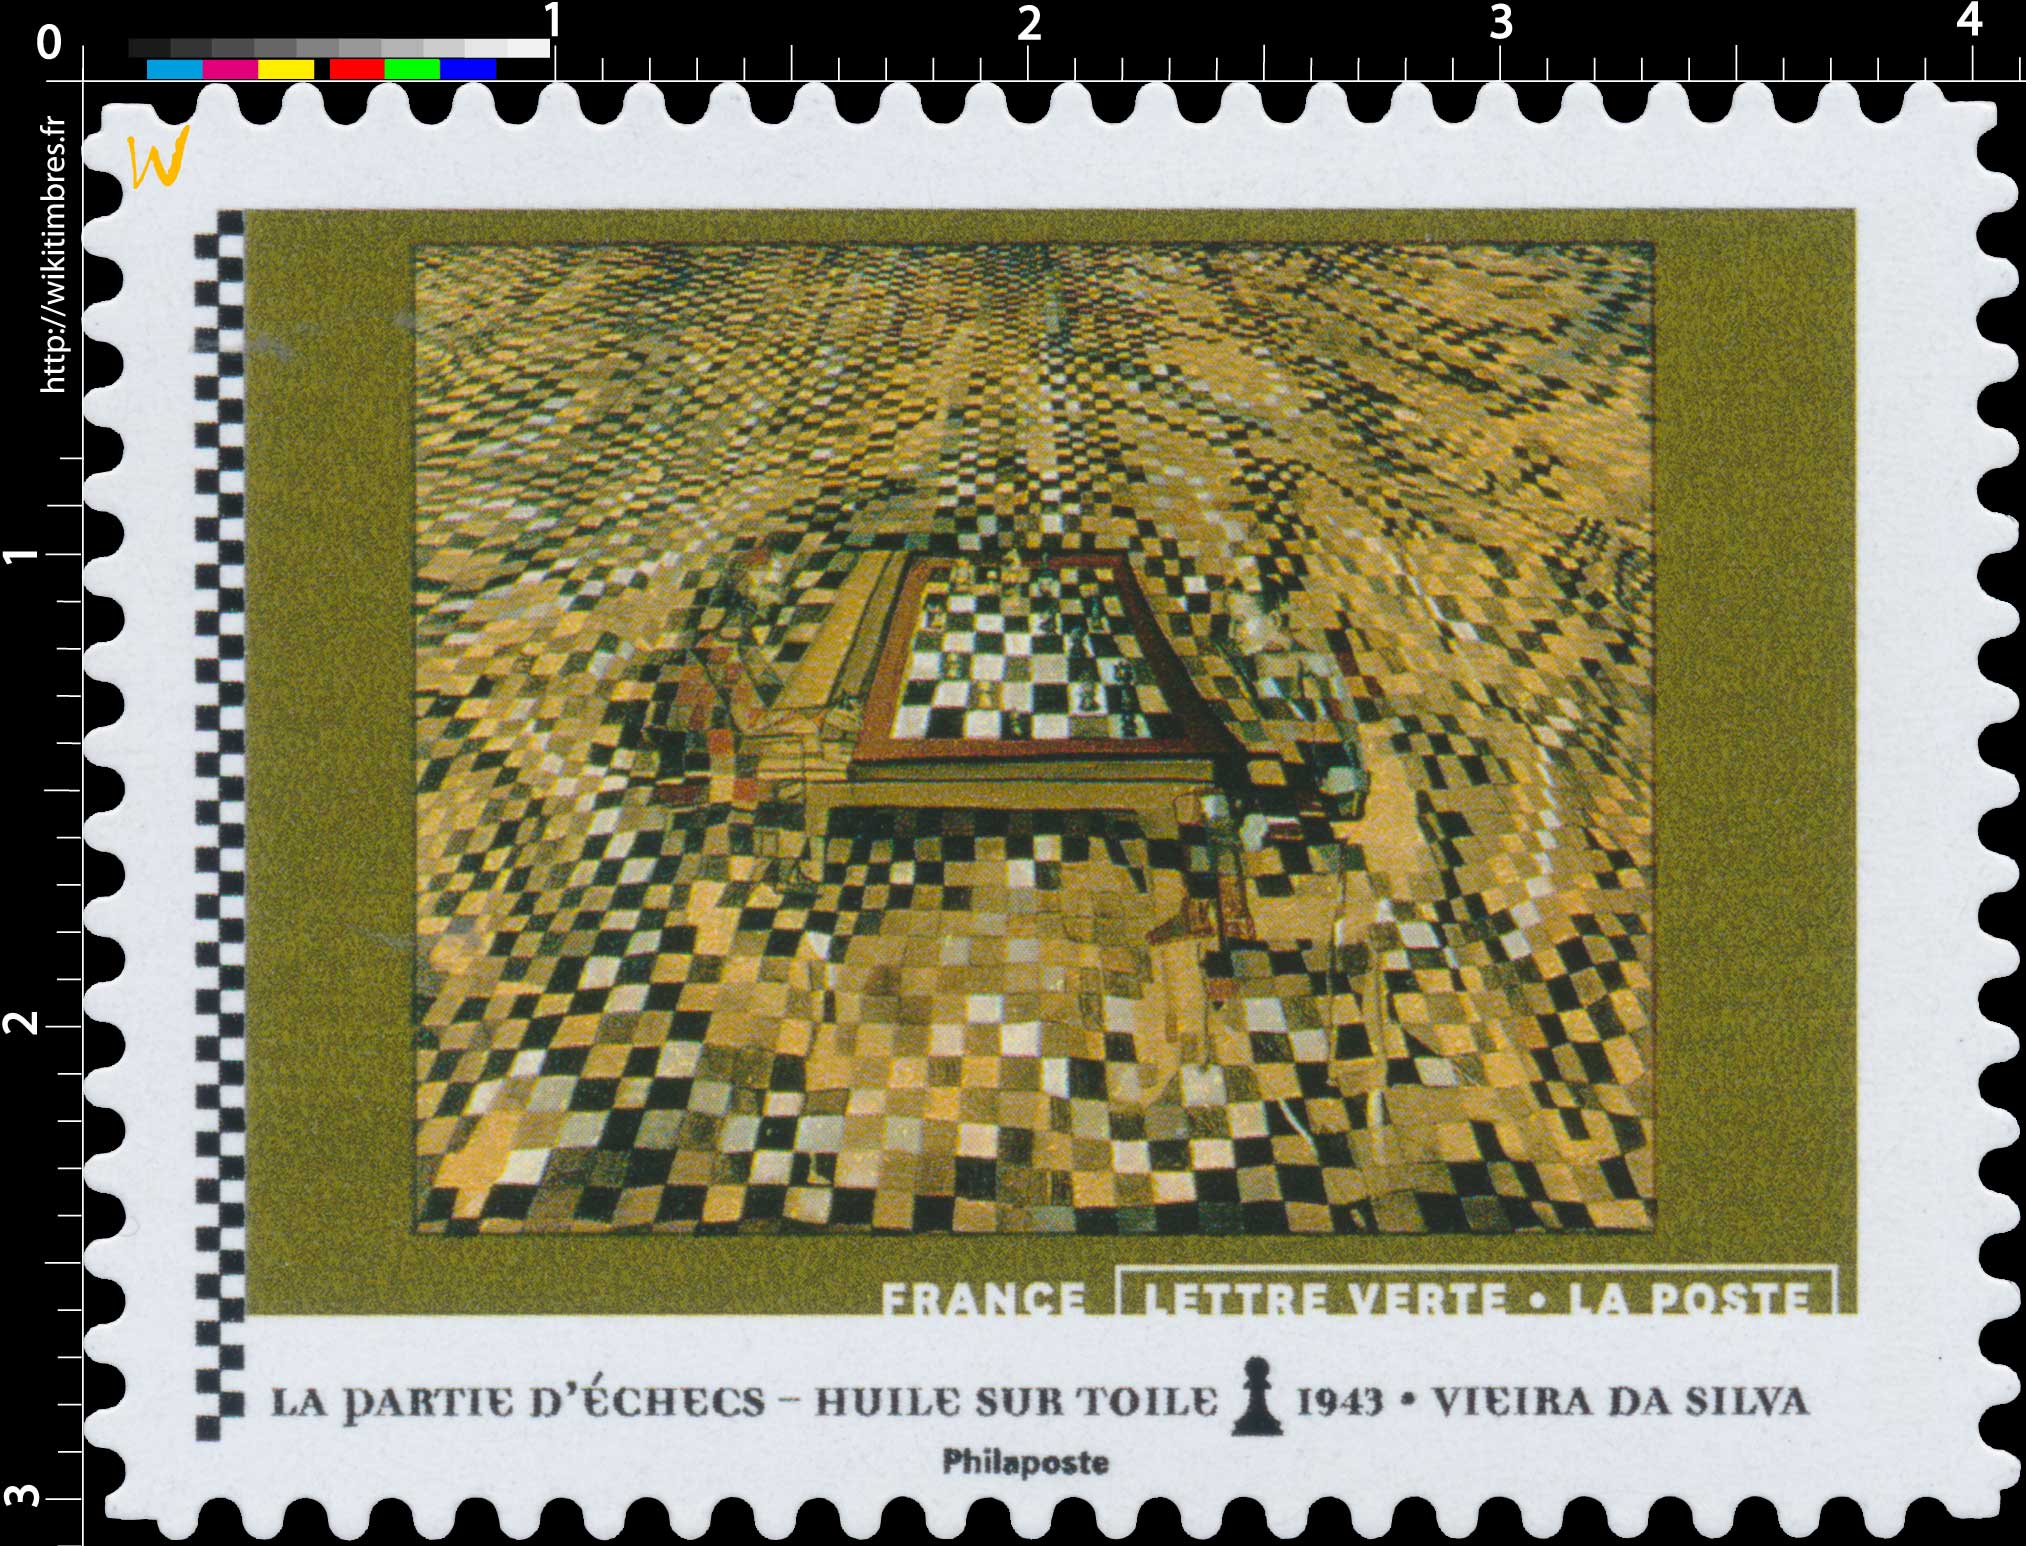 2021 La partie d'échecs - Huile sur toile 1943 - Vieira da Silva